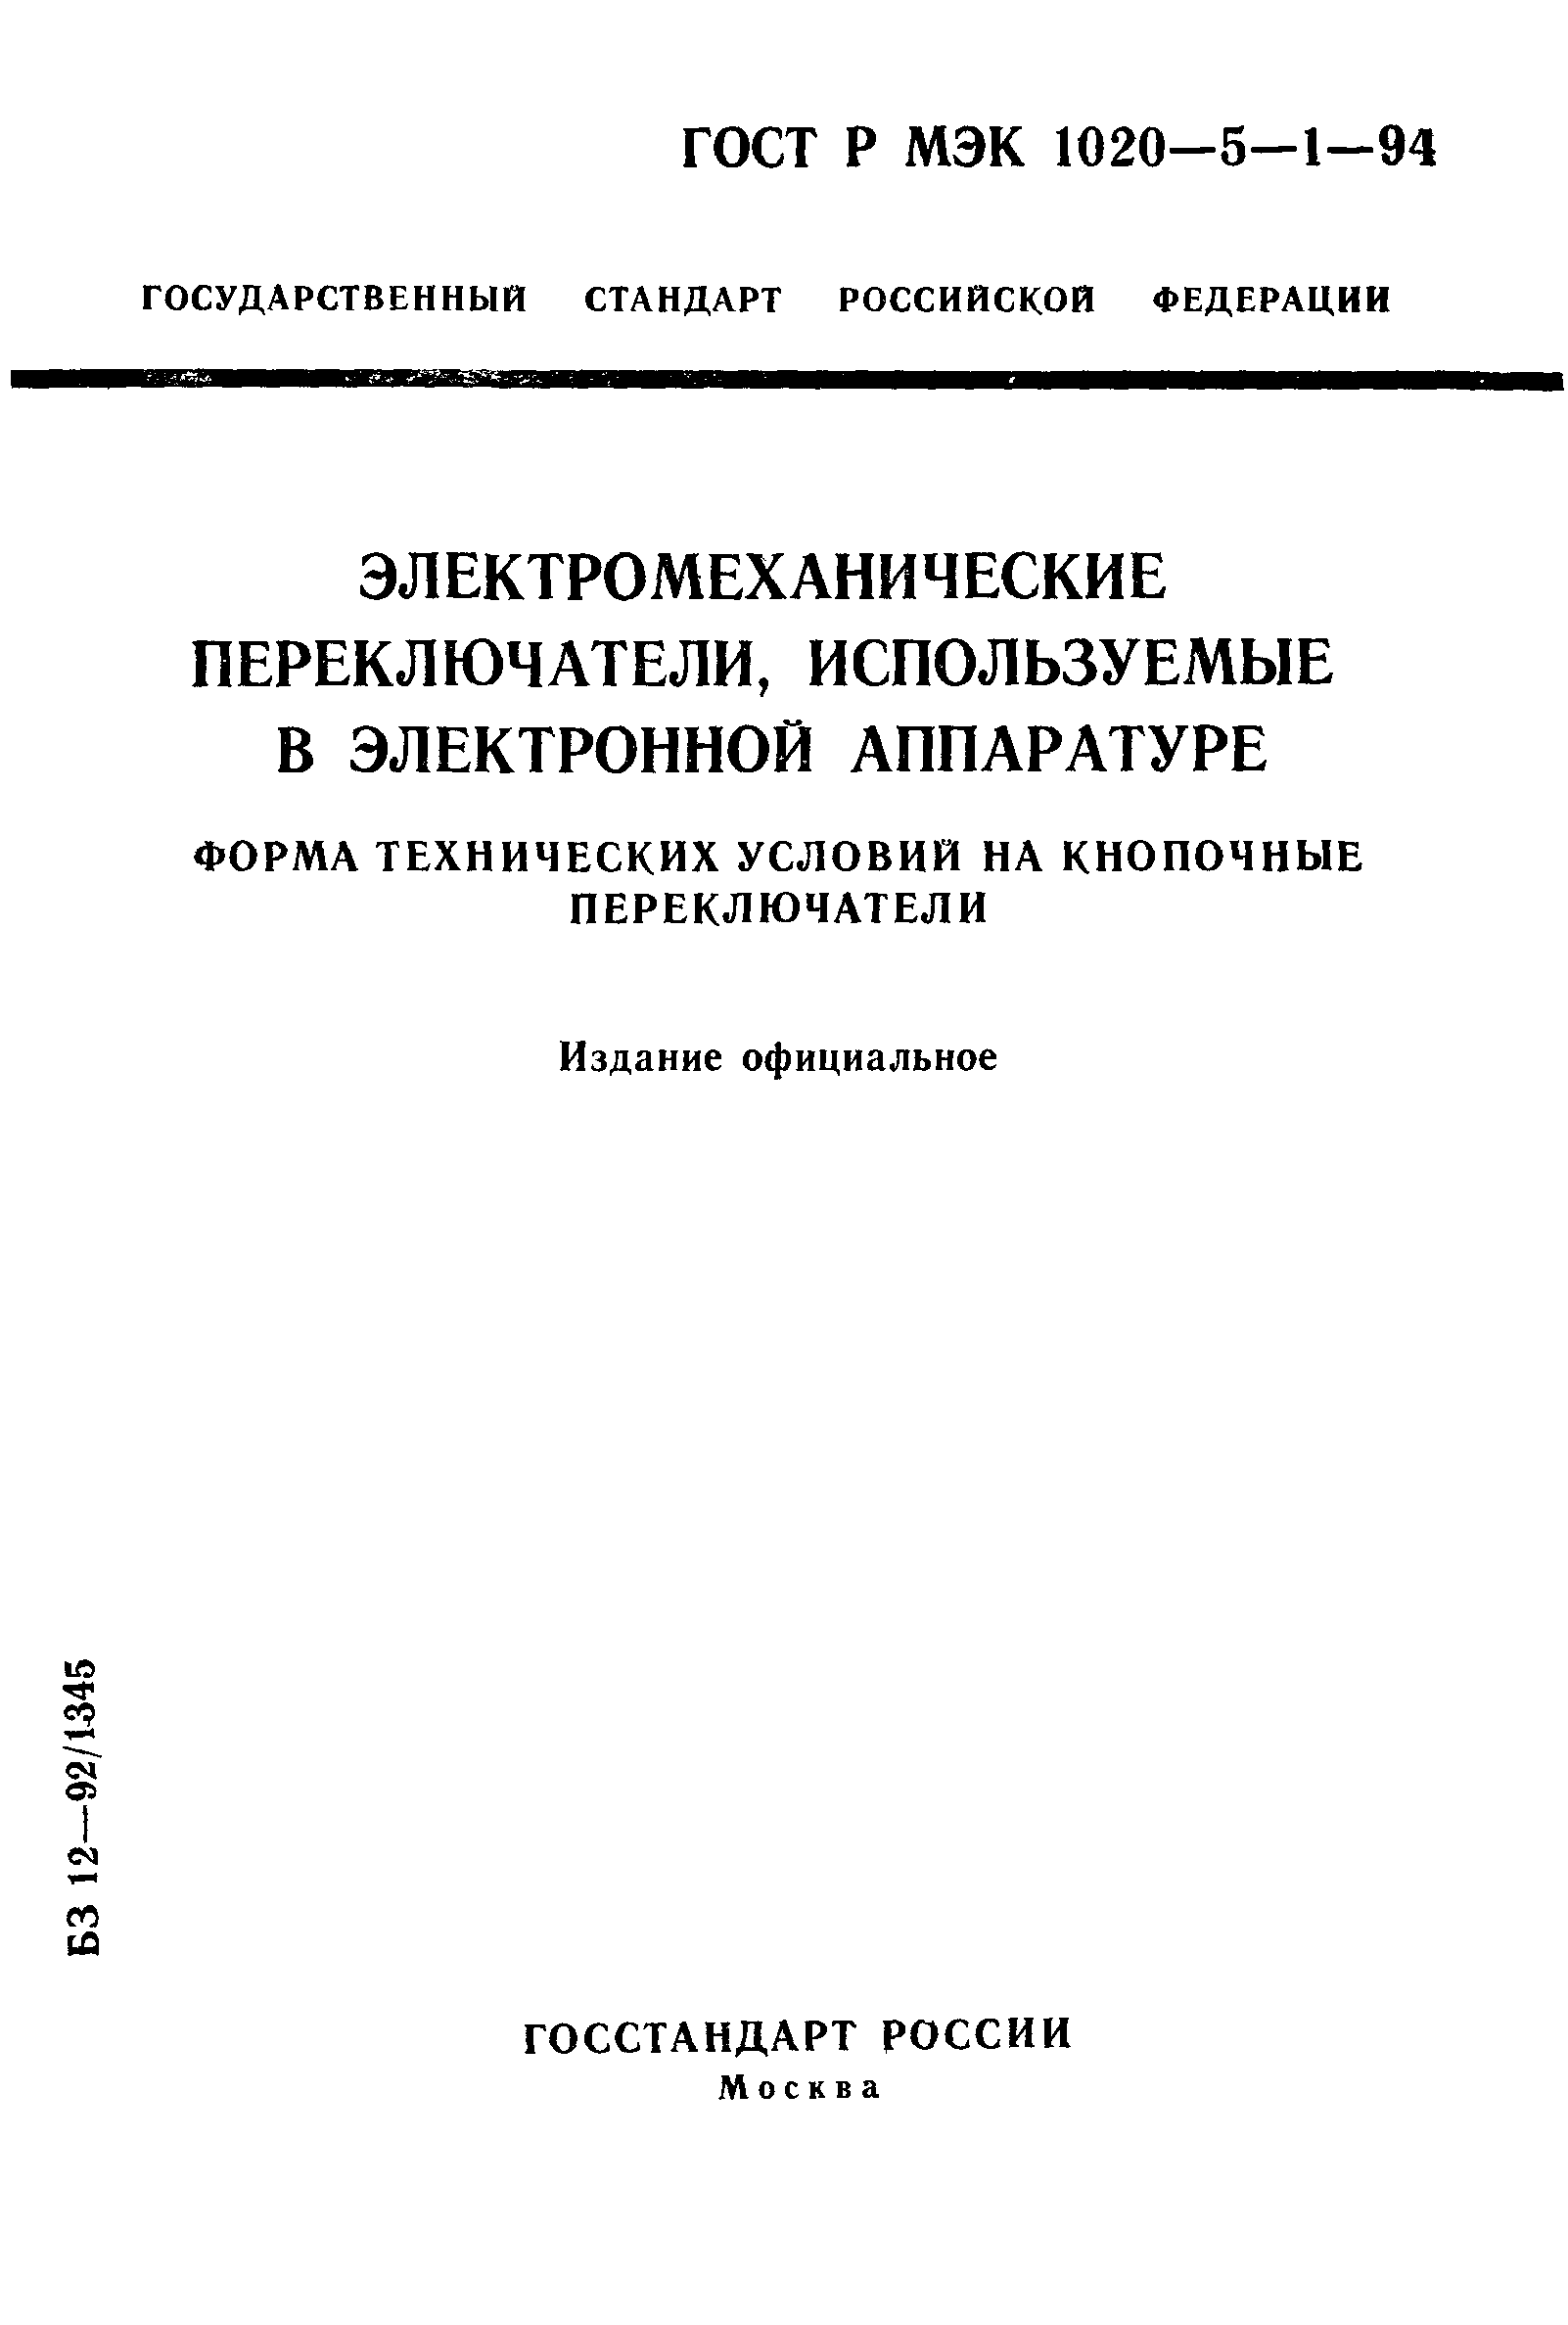 ГОСТ Р МЭК 1020-5-1-94